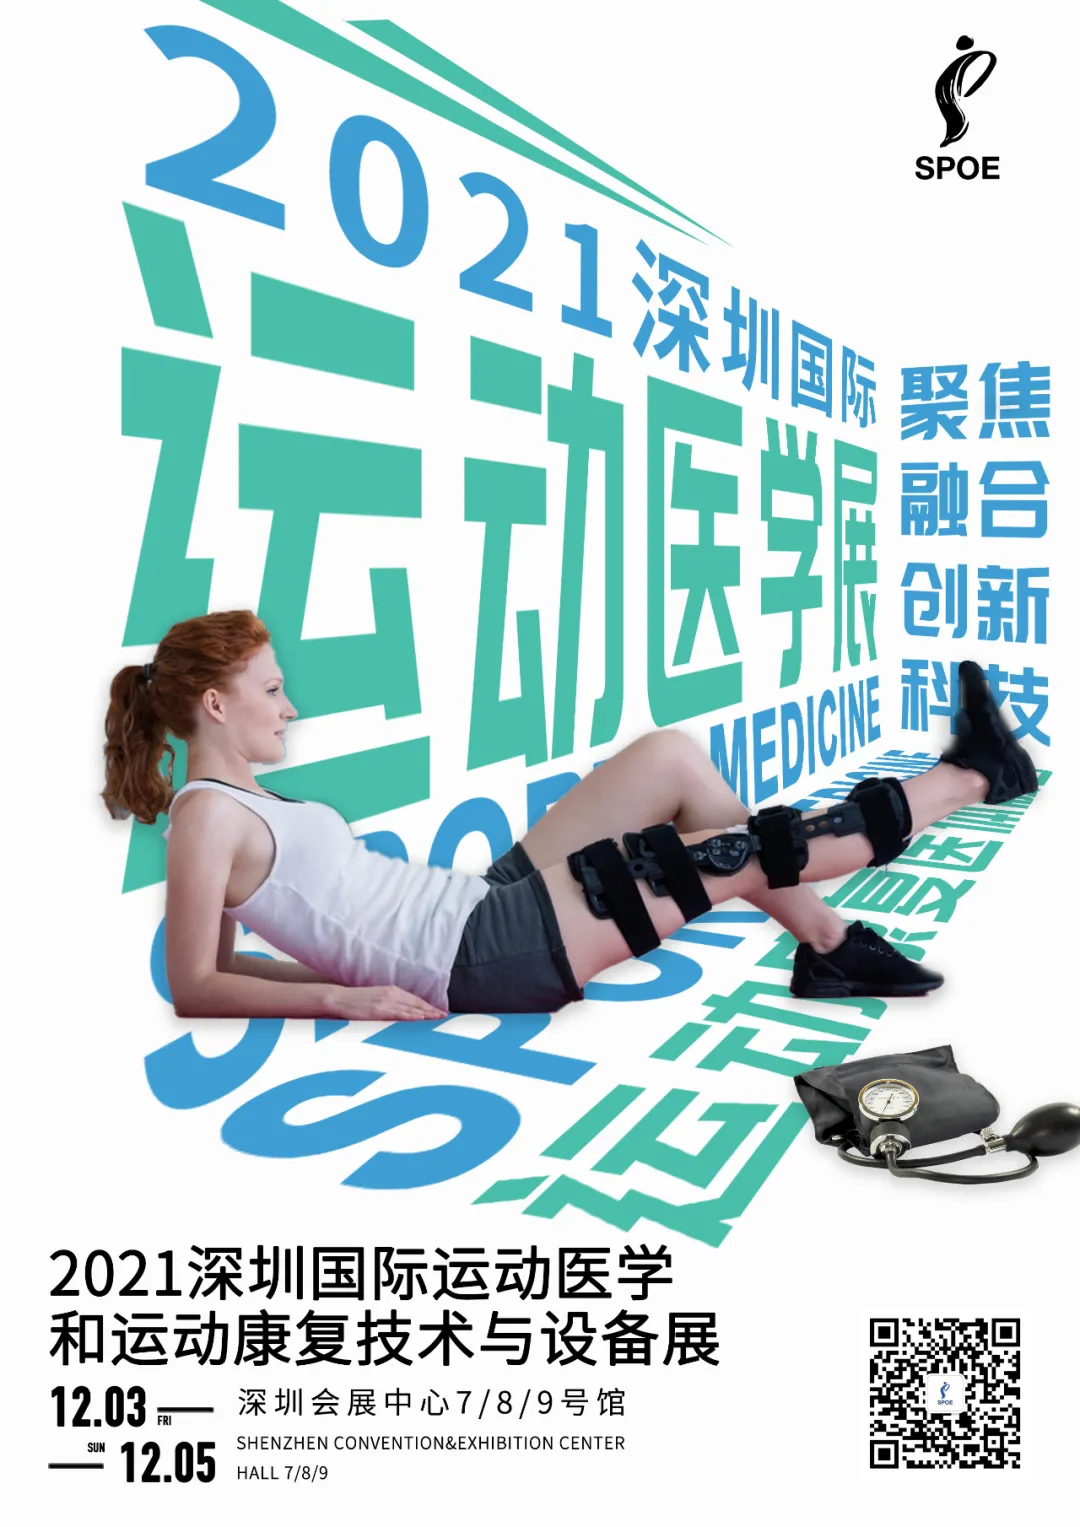 2021中华医学运动医疗学术年会 携业内顶级专家齐聚深圳体博会